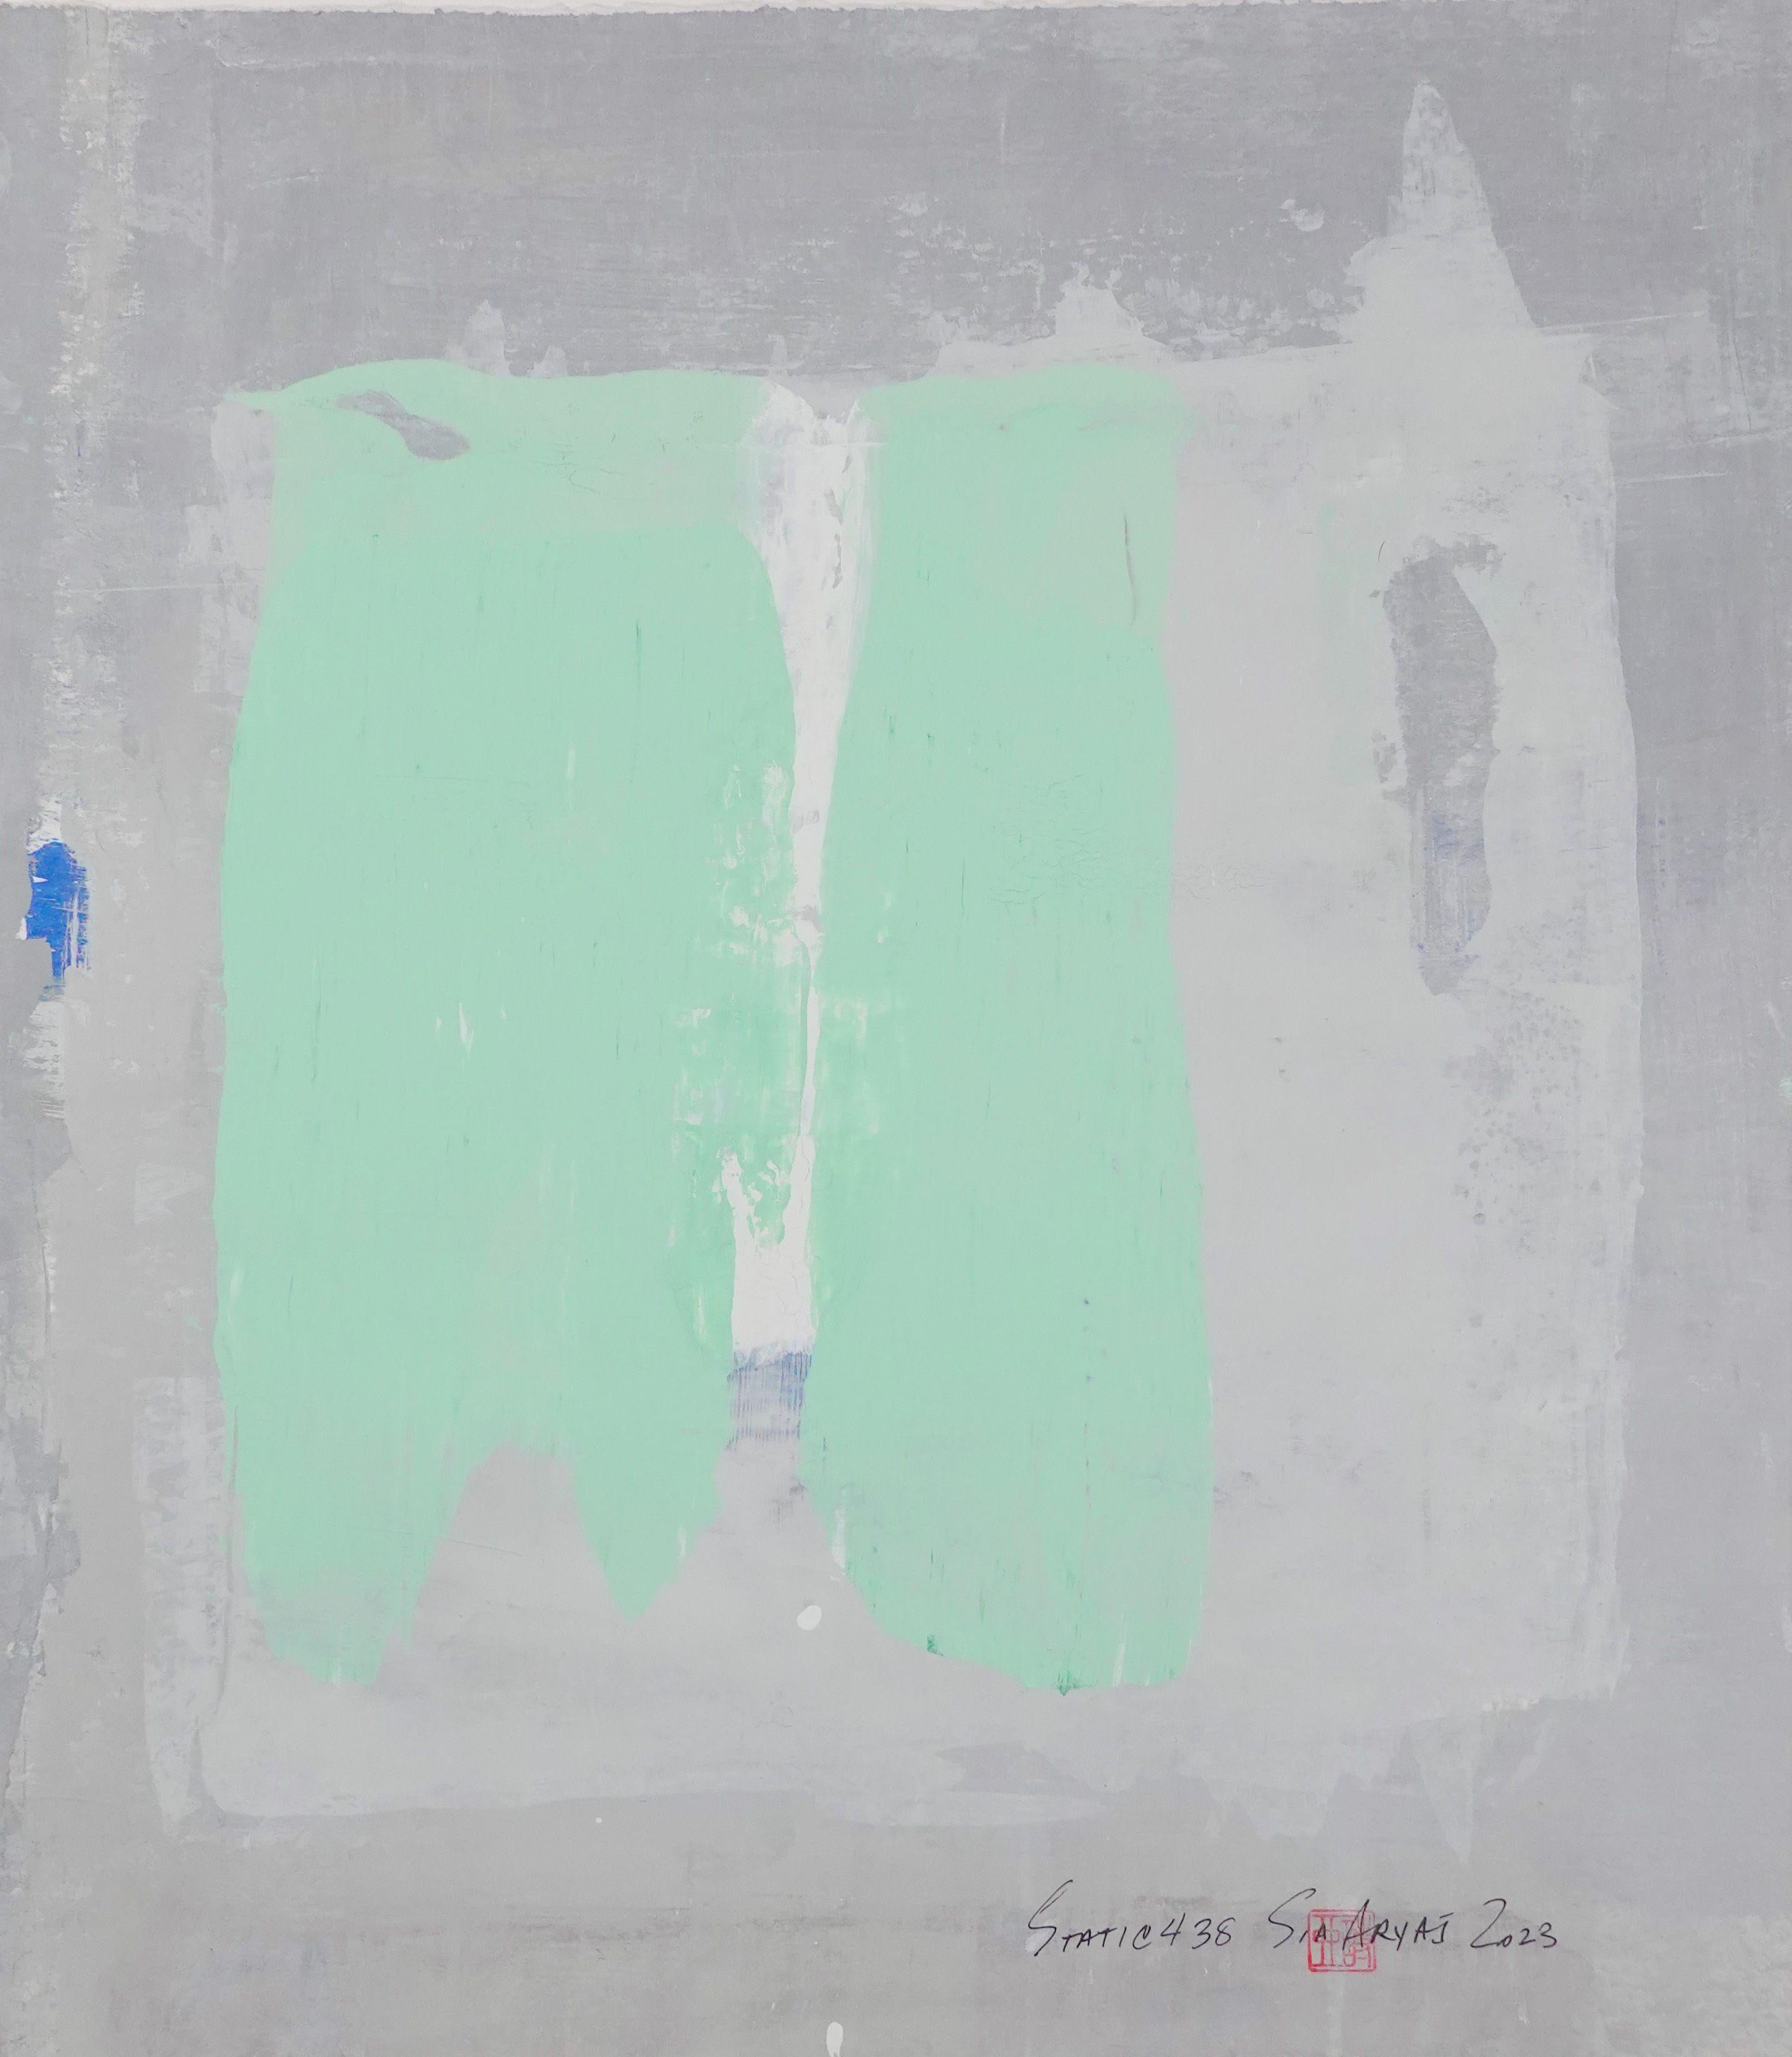 Abstract Painting Sia Aryai - Peinture abstraite verte statique encadrée 438, peinture, acrylique sur papier